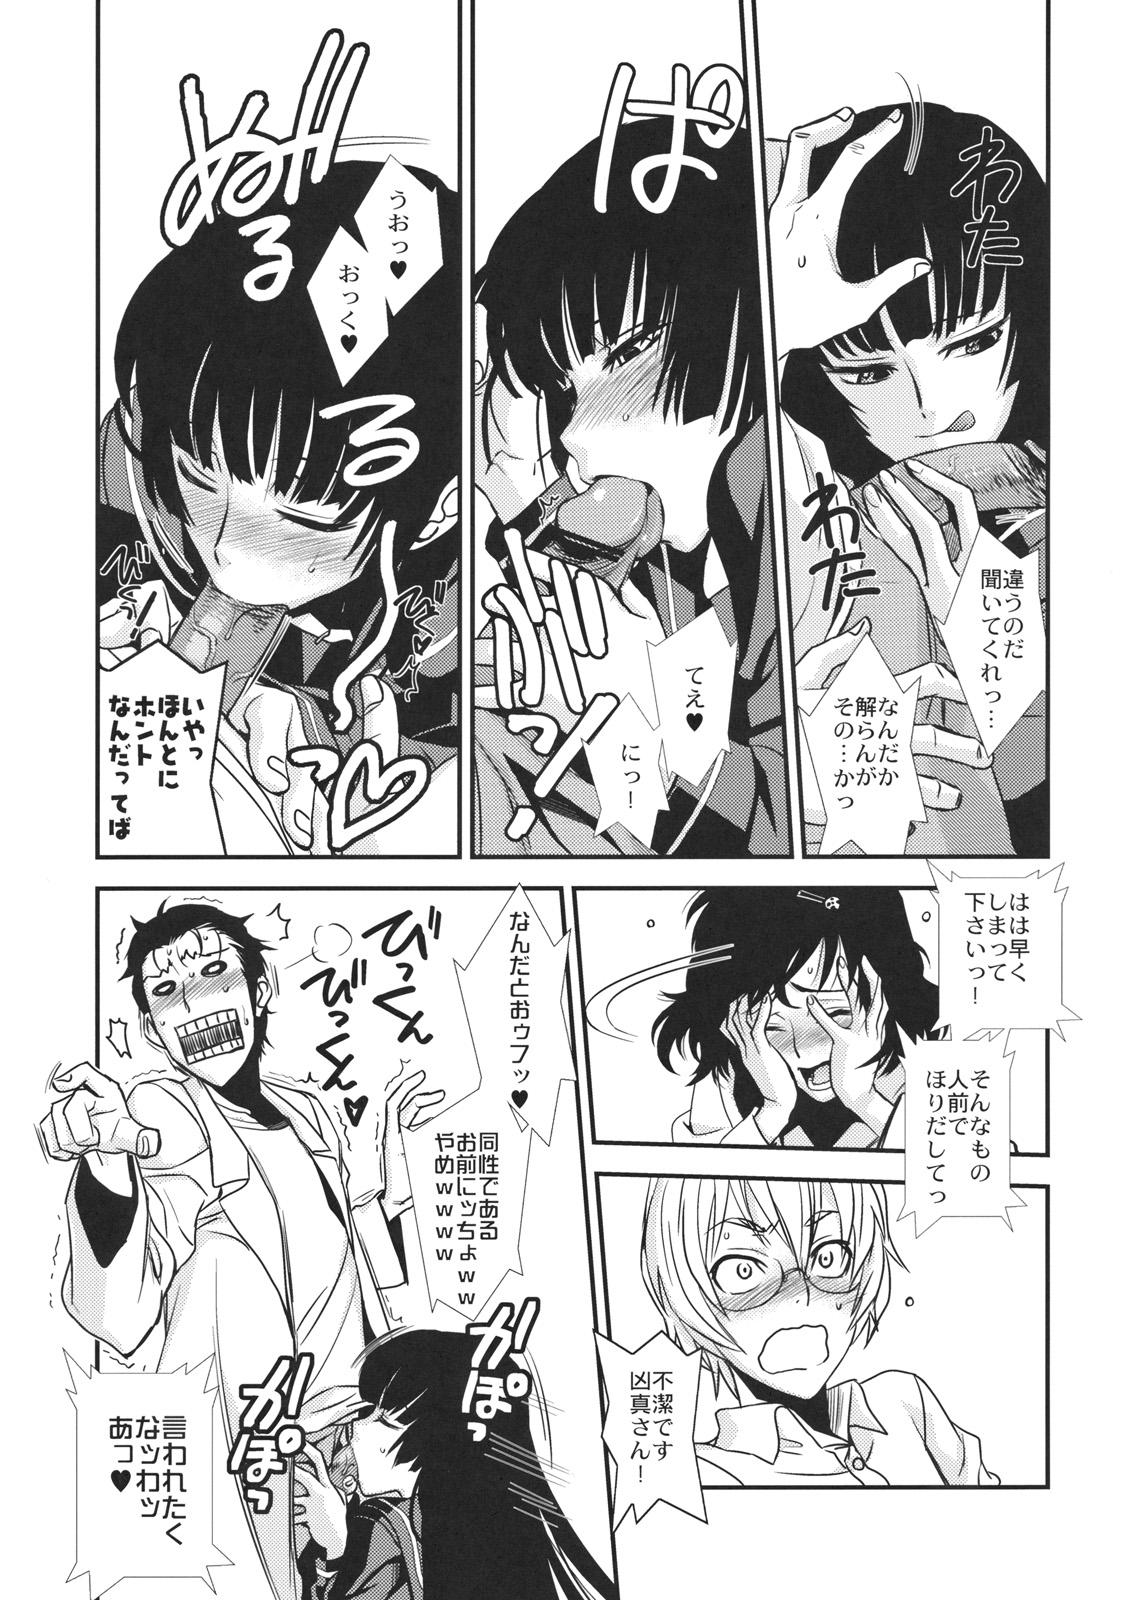 Ball Sucking Hontou ni Atta Kowai Hanashi - Steinsgate Tasogare otome x amnesia Fatal frame Girlfriends - Page 10